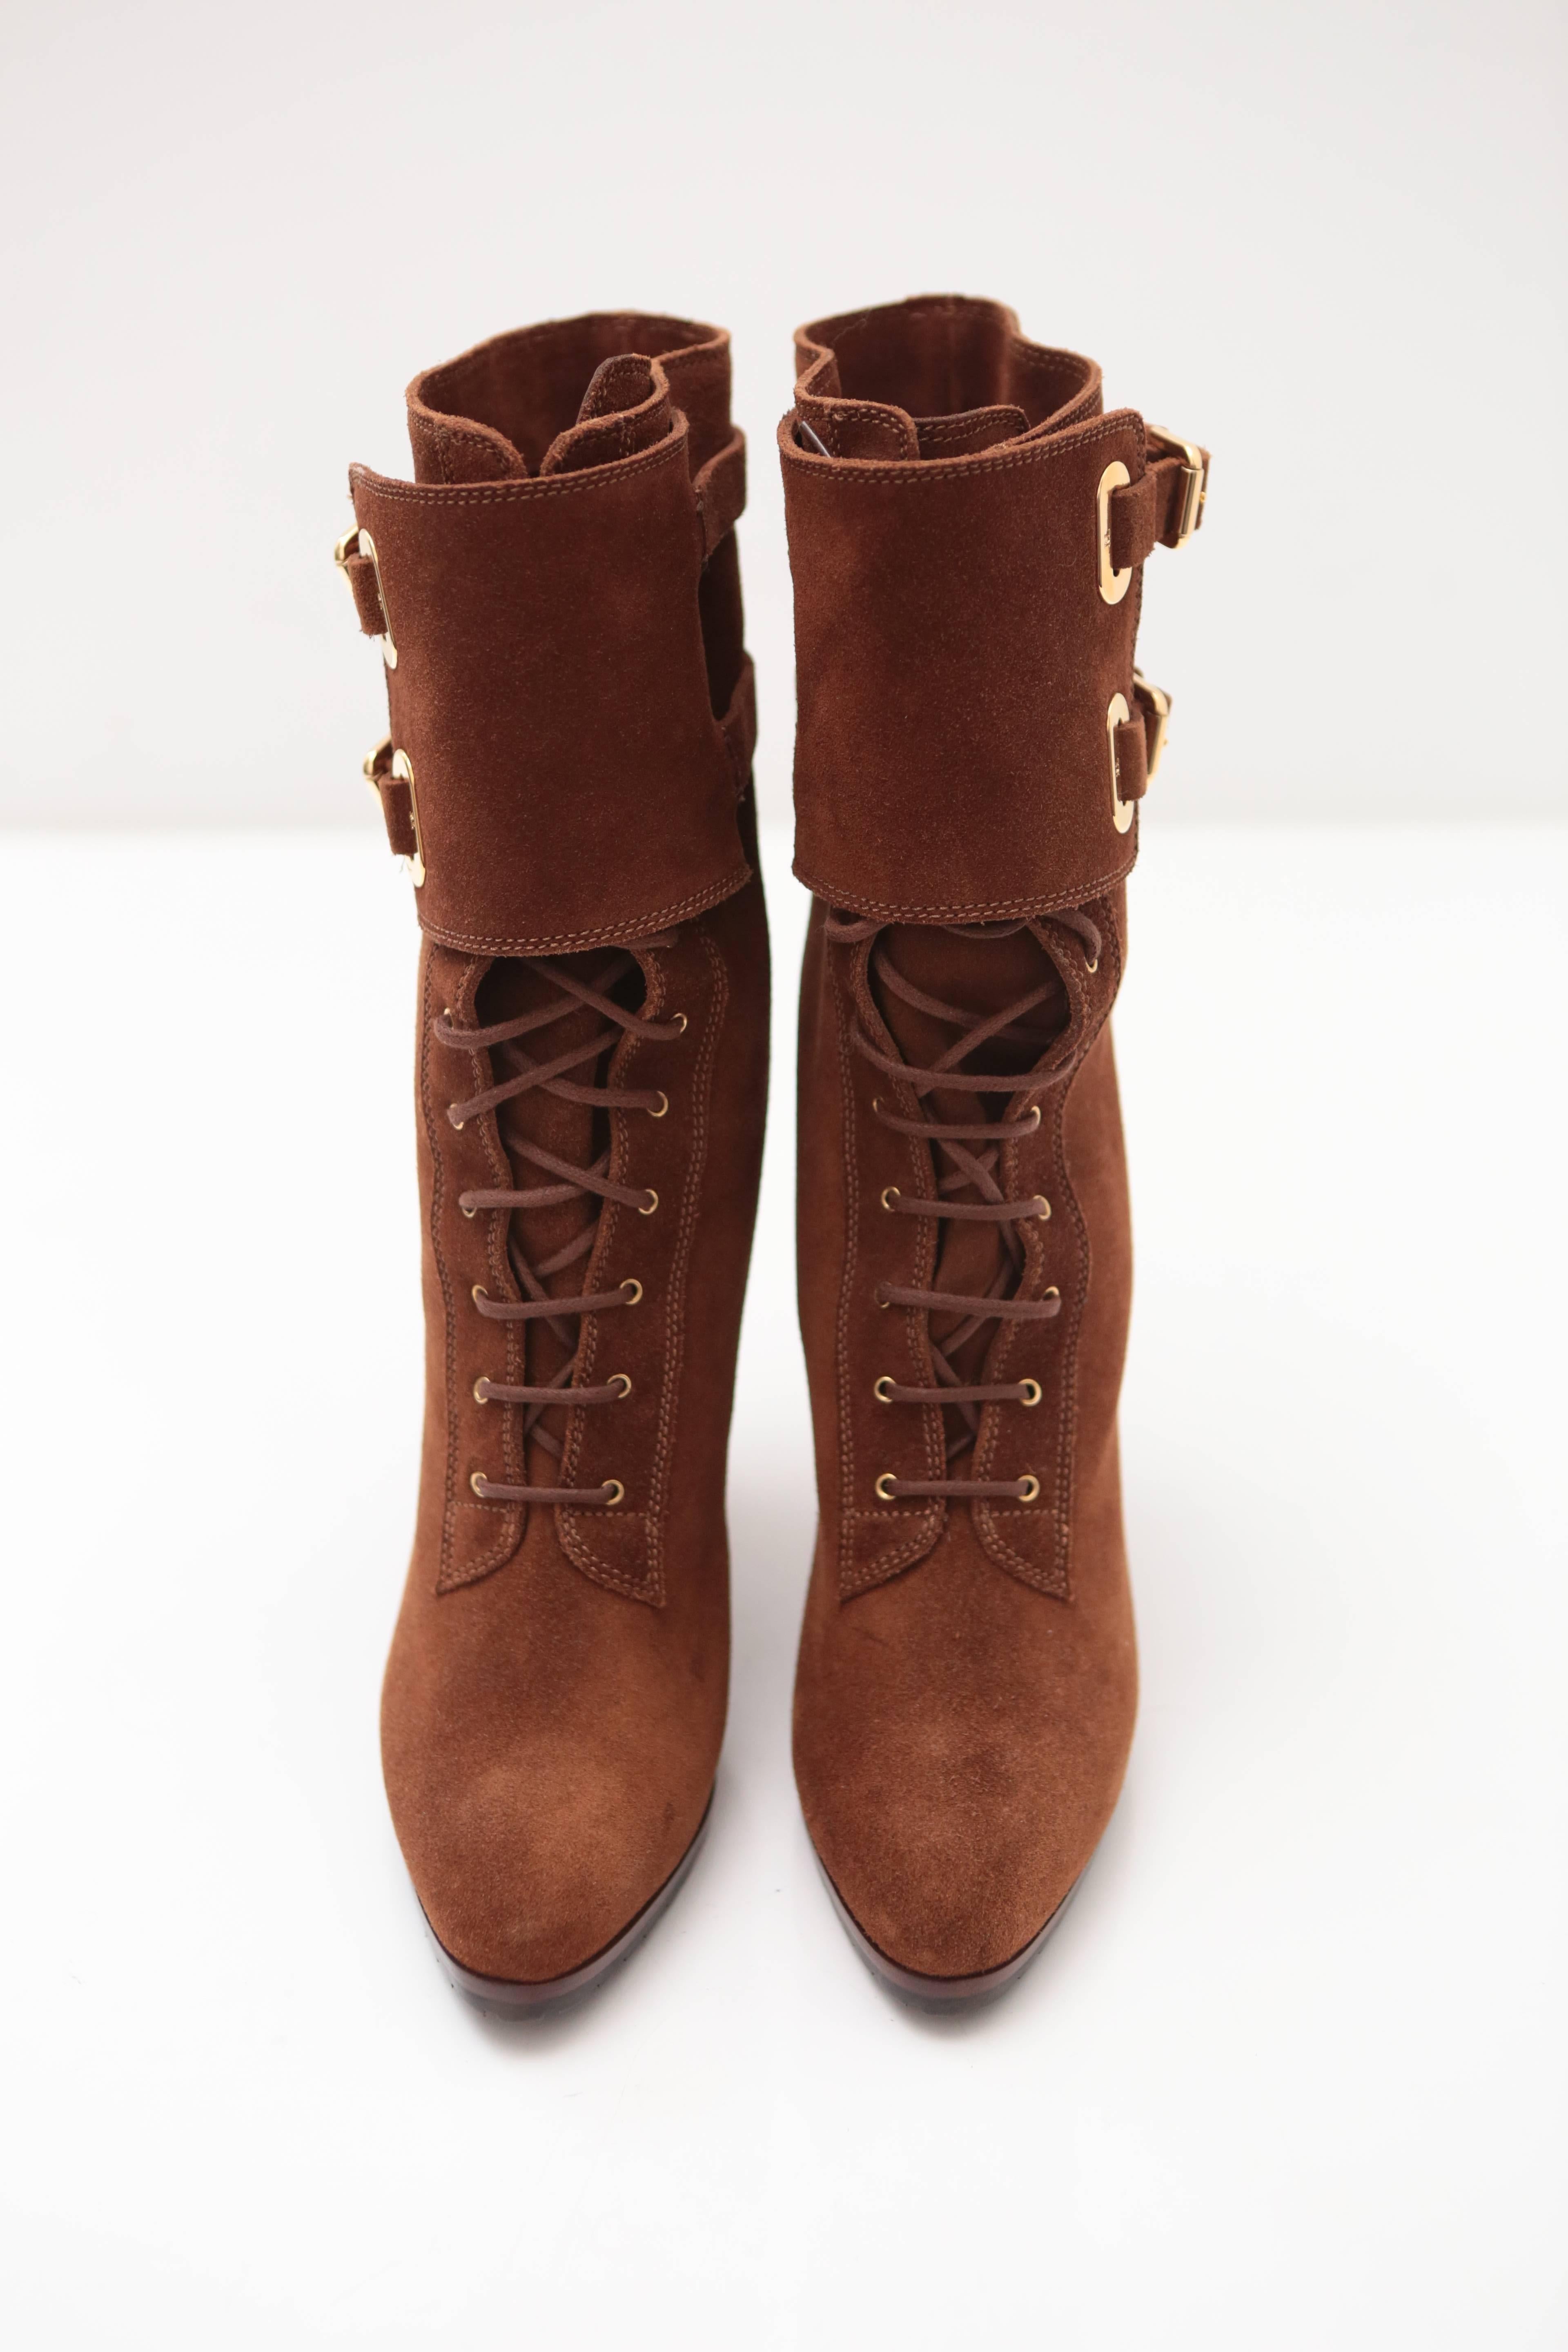 ralph lauren double buckle boots